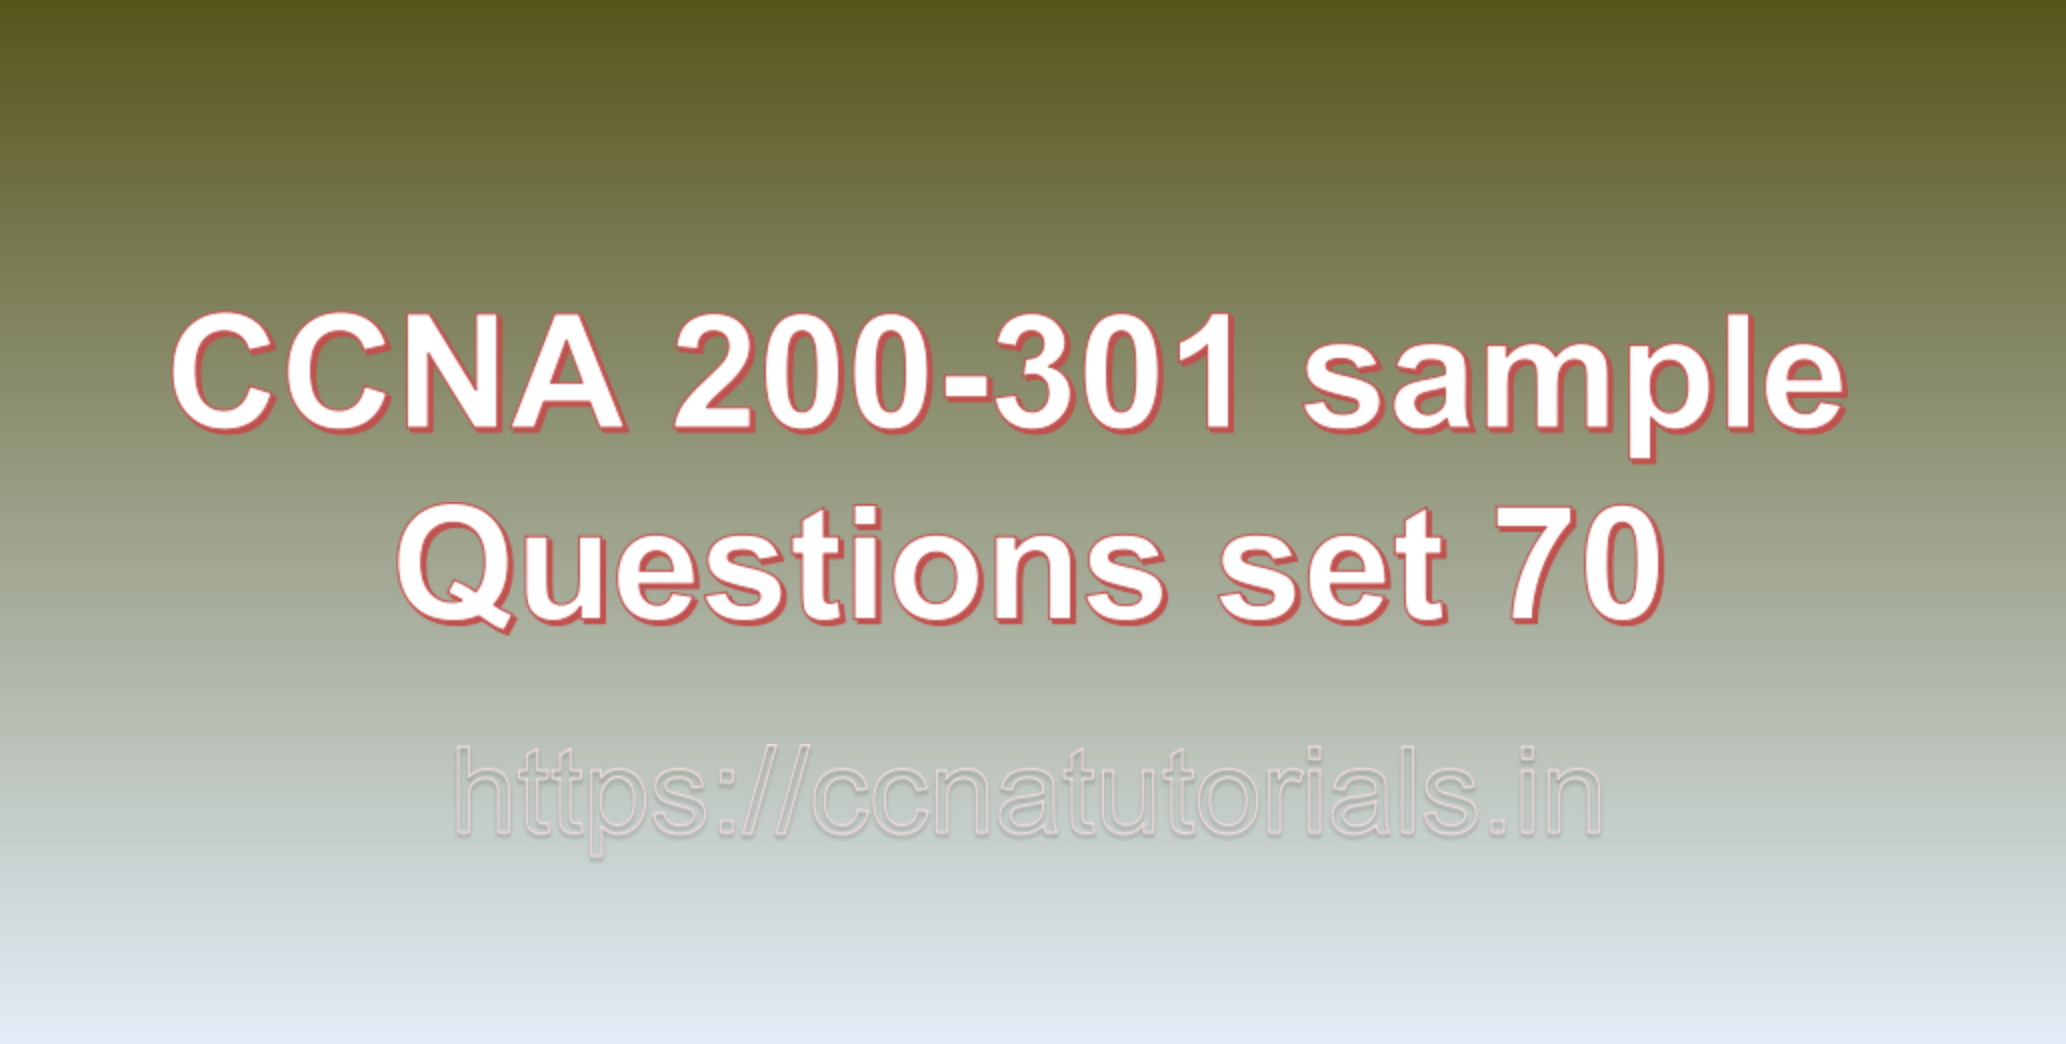 ccna sample questions set 70, ccna tutorials, CCNA Exam, ccna